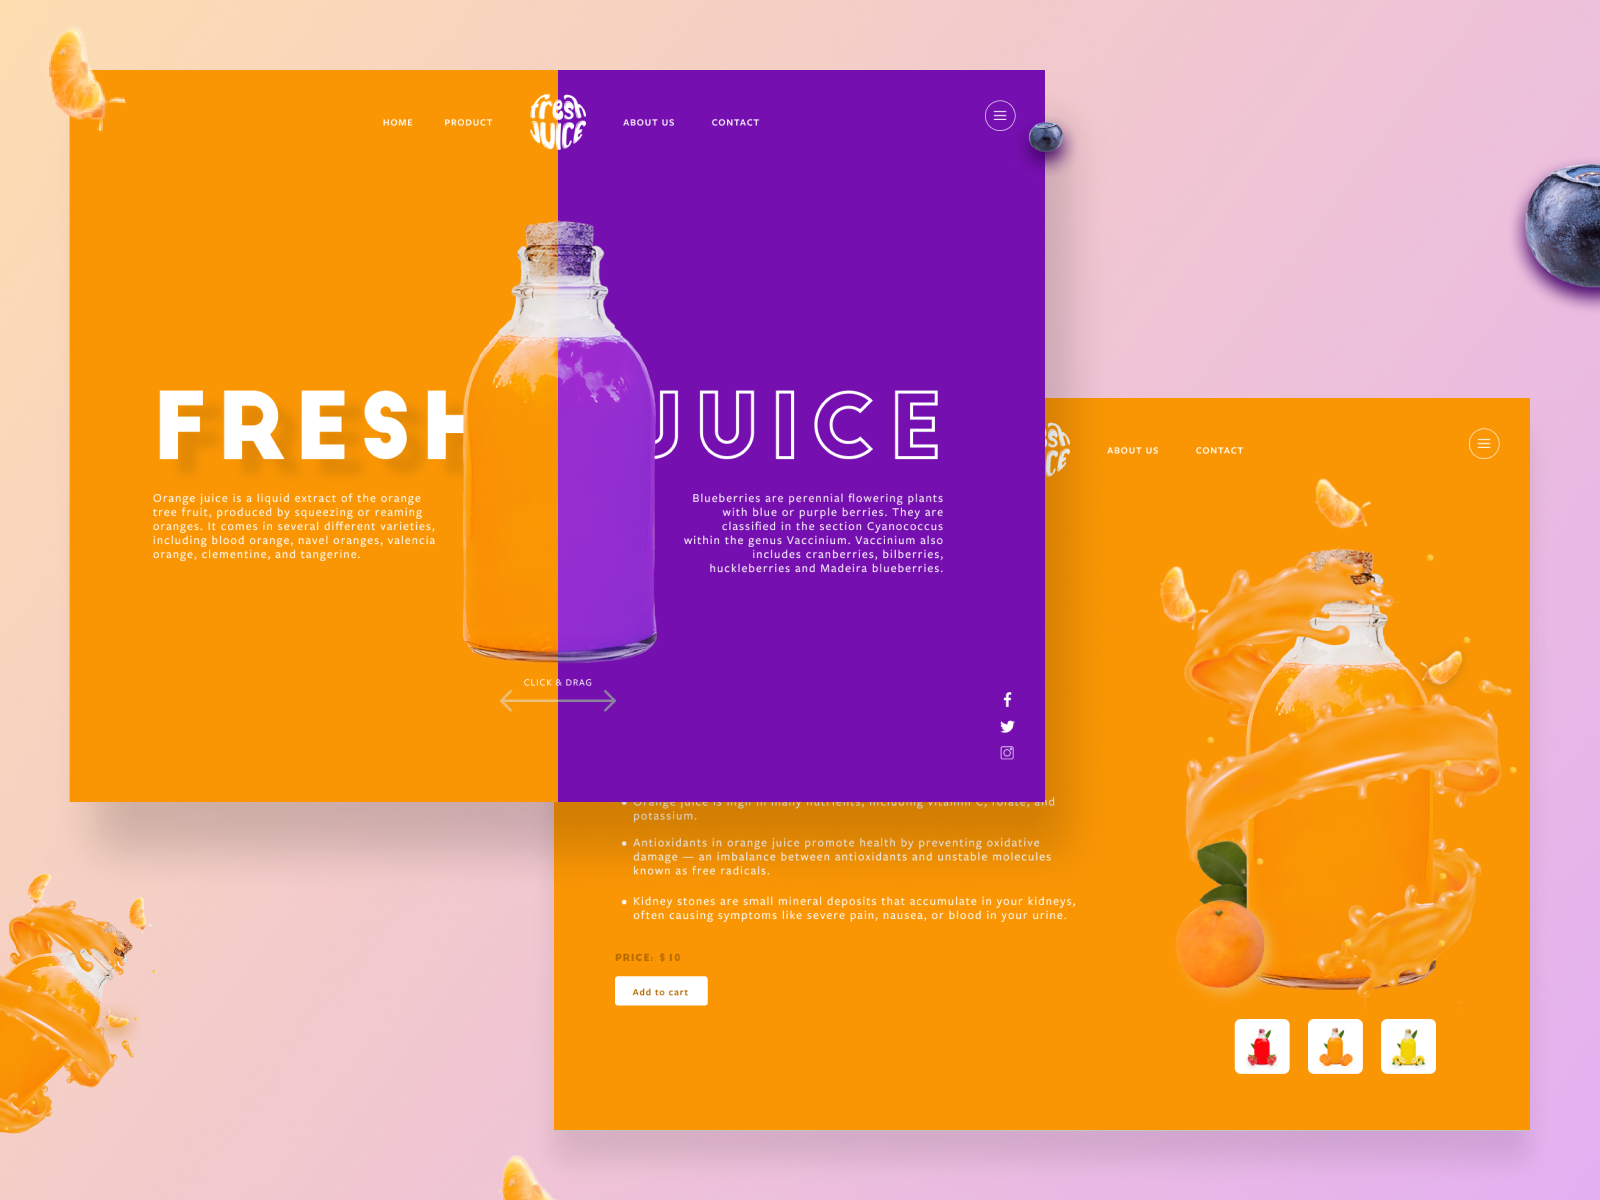 Juice Web Design by Adnan Khan on Dribbble